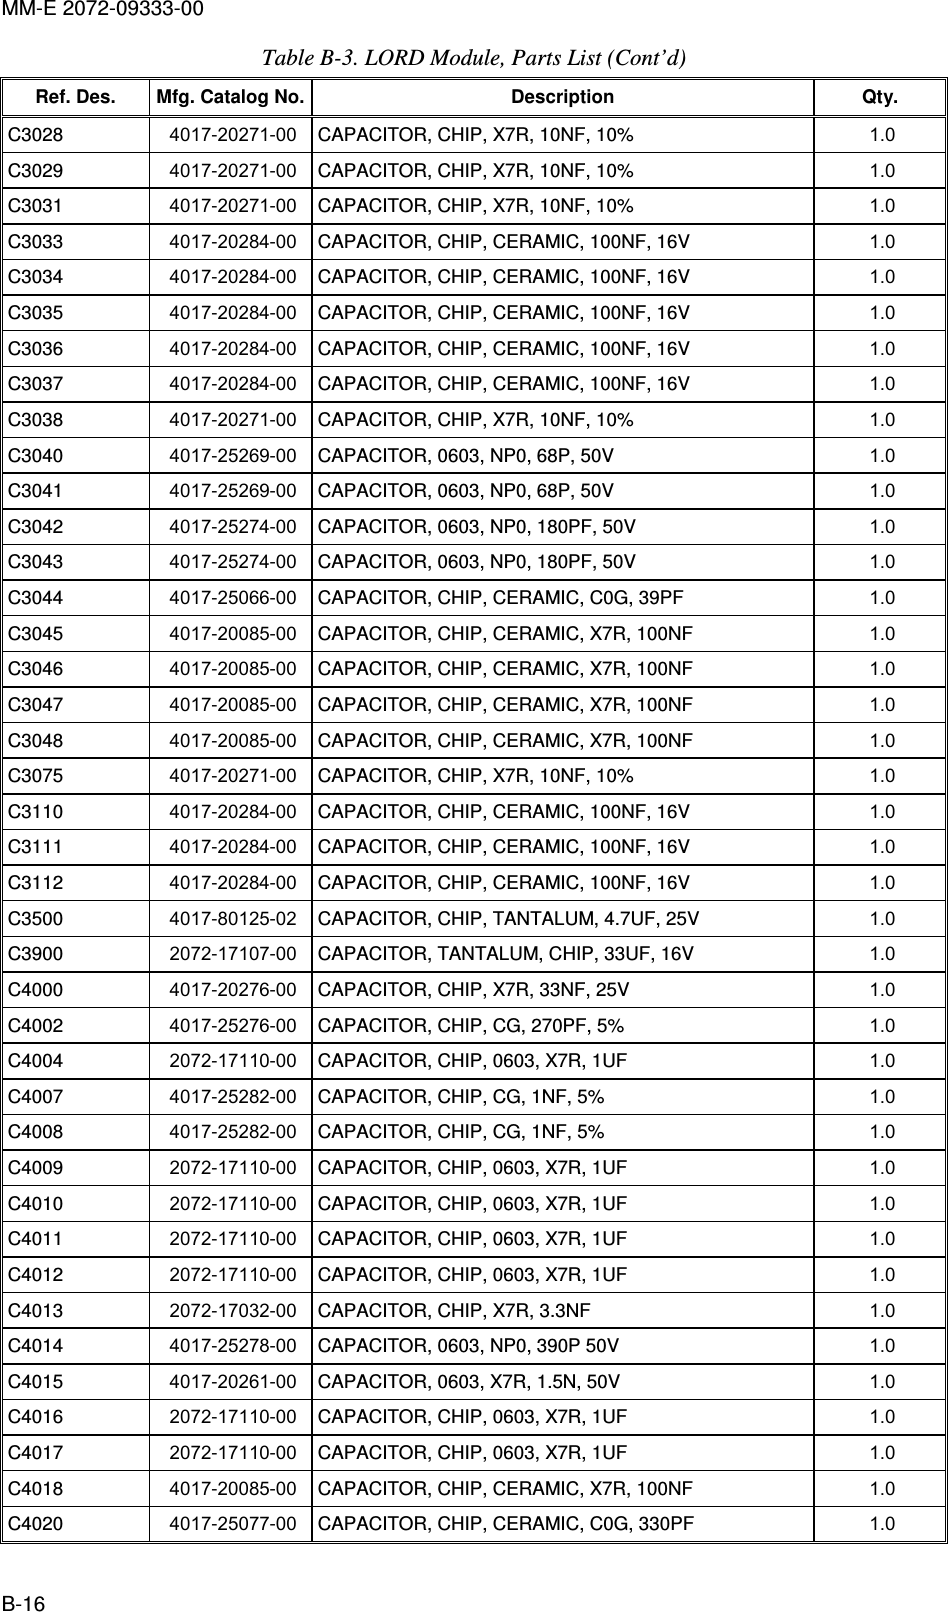 MM-E 2072-09333-00 B-16 Table  B-3. LORD Module, Parts List (Cont’d) Ref. Des.  Mfg. Catalog No. Description  Qty. C3028   4017-20271-00  CAPACITOR, CHIP, X7R, 10NF, 10%  1.0   C3029   4017-20271-00  CAPACITOR, CHIP, X7R, 10NF, 10%  1.0   C3031   4017-20271-00  CAPACITOR, CHIP, X7R, 10NF, 10%  1.0   C3033   4017-20284-00  CAPACITOR, CHIP, CERAMIC, 100NF, 16V  1.0   C3034   4017-20284-00  CAPACITOR, CHIP, CERAMIC, 100NF, 16V  1.0   C3035   4017-20284-00  CAPACITOR, CHIP, CERAMIC, 100NF, 16V  1.0   C3036   4017-20284-00  CAPACITOR, CHIP, CERAMIC, 100NF, 16V  1.0   C3037   4017-20284-00  CAPACITOR, CHIP, CERAMIC, 100NF, 16V  1.0   C3038   4017-20271-00  CAPACITOR, CHIP, X7R, 10NF, 10%  1.0   C3040   4017-25269-00  CAPACITOR, 0603, NP0, 68P, 50V  1.0   C3041   4017-25269-00  CAPACITOR, 0603, NP0, 68P, 50V  1.0   C3042   4017-25274-00  CAPACITOR, 0603, NP0, 180PF, 50V  1.0   C3043   4017-25274-00  CAPACITOR, 0603, NP0, 180PF, 50V  1.0   C3044   4017-25066-00  CAPACITOR, CHIP, CERAMIC, C0G, 39PF  1.0   C3045   4017-20085-00  CAPACITOR, CHIP, CERAMIC, X7R, 100NF  1.0   C3046   4017-20085-00  CAPACITOR, CHIP, CERAMIC, X7R, 100NF  1.0   C3047   4017-20085-00  CAPACITOR, CHIP, CERAMIC, X7R, 100NF  1.0   C3048   4017-20085-00  CAPACITOR, CHIP, CERAMIC, X7R, 100NF  1.0   C3075   4017-20271-00  CAPACITOR, CHIP, X7R, 10NF, 10%  1.0   C3110   4017-20284-00  CAPACITOR, CHIP, CERAMIC, 100NF, 16V  1.0   C3111   4017-20284-00  CAPACITOR, CHIP, CERAMIC, 100NF, 16V  1.0   C3112   4017-20284-00  CAPACITOR, CHIP, CERAMIC, 100NF, 16V  1.0   C3500   4017-80125-02  CAPACITOR, CHIP, TANTALUM, 4.7UF, 25V  1.0   C3900   2072-17107-00  CAPACITOR, TANTALUM, CHIP, 33UF, 16V  1.0   C4000   4017-20276-00  CAPACITOR, CHIP, X7R, 33NF, 25V  1.0   C4002   4017-25276-00  CAPACITOR, CHIP, CG, 270PF, 5%  1.0   C4004   2072-17110-00  CAPACITOR, CHIP, 0603, X7R, 1UF  1.0   C4007   4017-25282-00  CAPACITOR, CHIP, CG, 1NF, 5%  1.0   C4008   4017-25282-00  CAPACITOR, CHIP, CG, 1NF, 5%  1.0   C4009   2072-17110-00  CAPACITOR, CHIP, 0603, X7R, 1UF  1.0   C4010   2072-17110-00  CAPACITOR, CHIP, 0603, X7R, 1UF  1.0   C4011   2072-17110-00  CAPACITOR, CHIP, 0603, X7R, 1UF  1.0   C4012   2072-17110-00  CAPACITOR, CHIP, 0603, X7R, 1UF  1.0   C4013   2072-17032-00  CAPACITOR, CHIP, X7R, 3.3NF  1.0   C4014   4017-25278-00  CAPACITOR, 0603, NP0, 390P 50V  1.0   C4015   4017-20261-00  CAPACITOR, 0603, X7R, 1.5N, 50V  1.0   C4016   2072-17110-00  CAPACITOR, CHIP, 0603, X7R, 1UF  1.0   C4017   2072-17110-00  CAPACITOR, CHIP, 0603, X7R, 1UF  1.0   C4018   4017-20085-00  CAPACITOR, CHIP, CERAMIC, X7R, 100NF  1.0   C4020   4017-25077-00  CAPACITOR, CHIP, CERAMIC, C0G, 330PF  1.0   